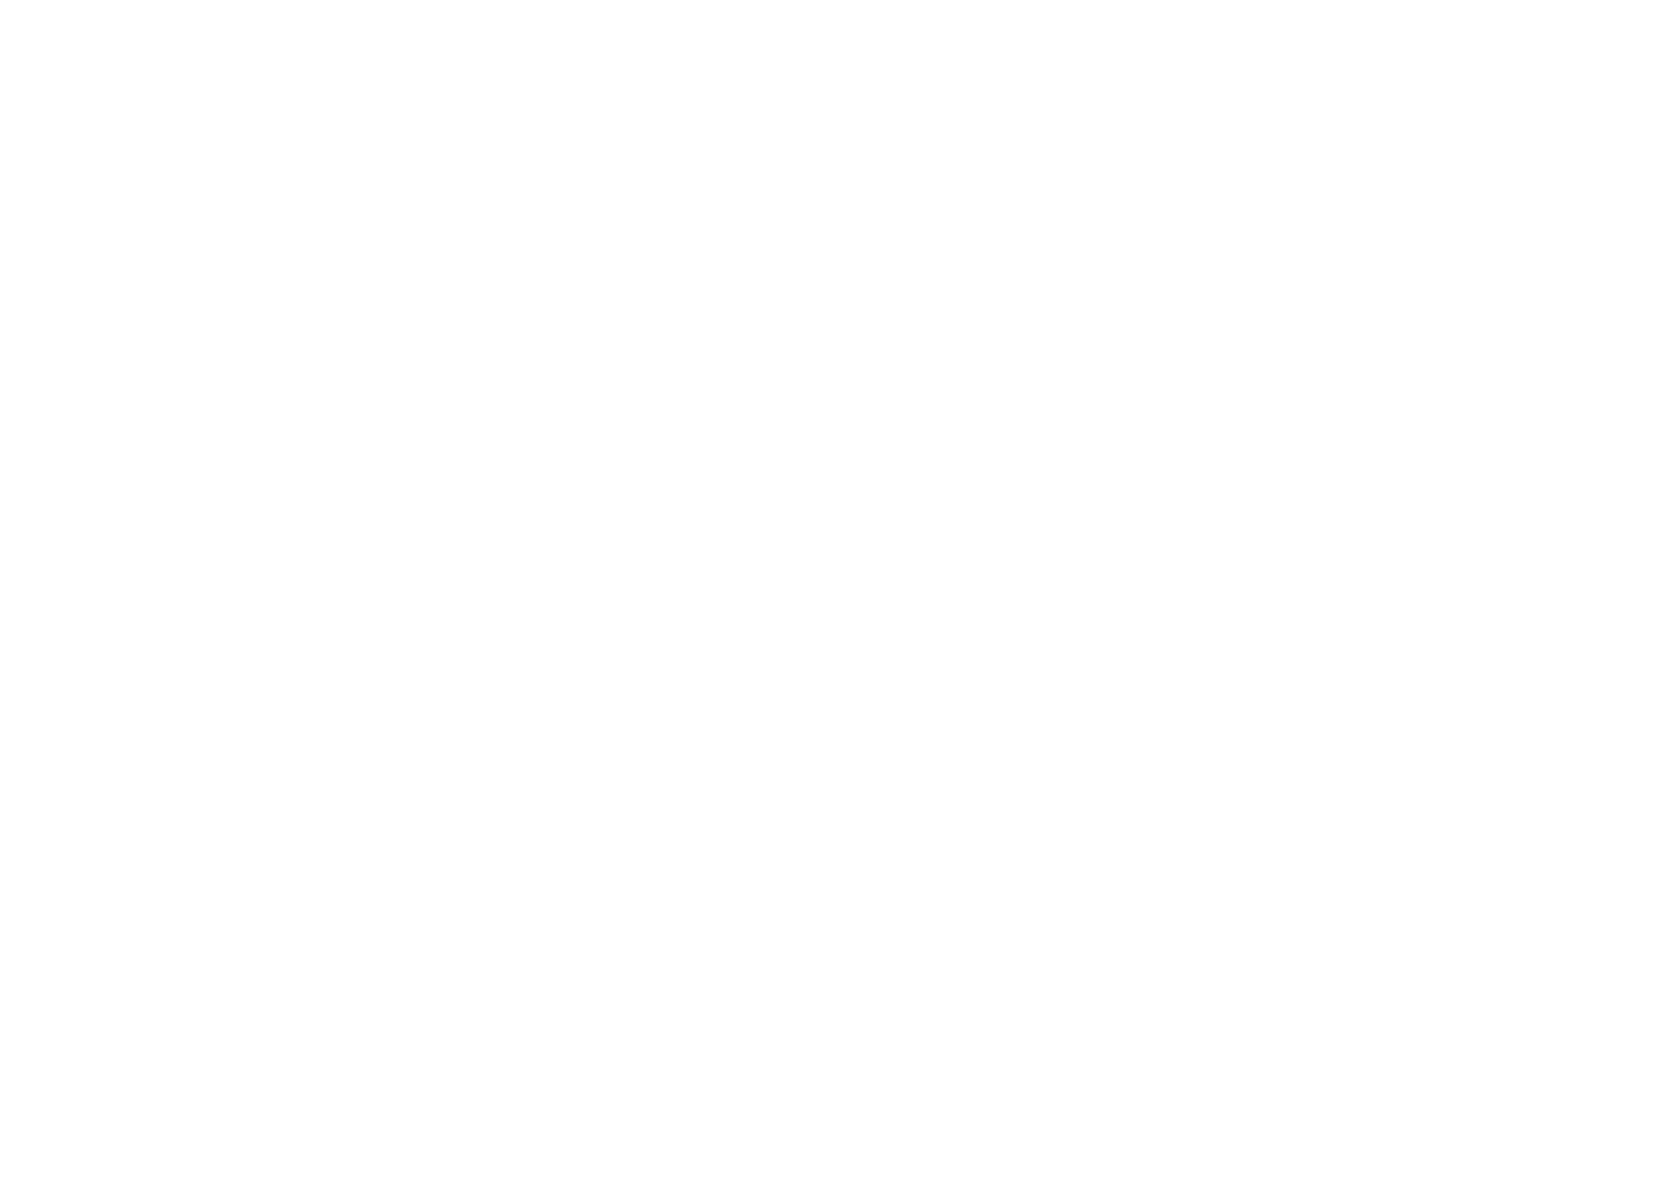 CSN Mineração logo pour fonds sombres (PNG transparent)